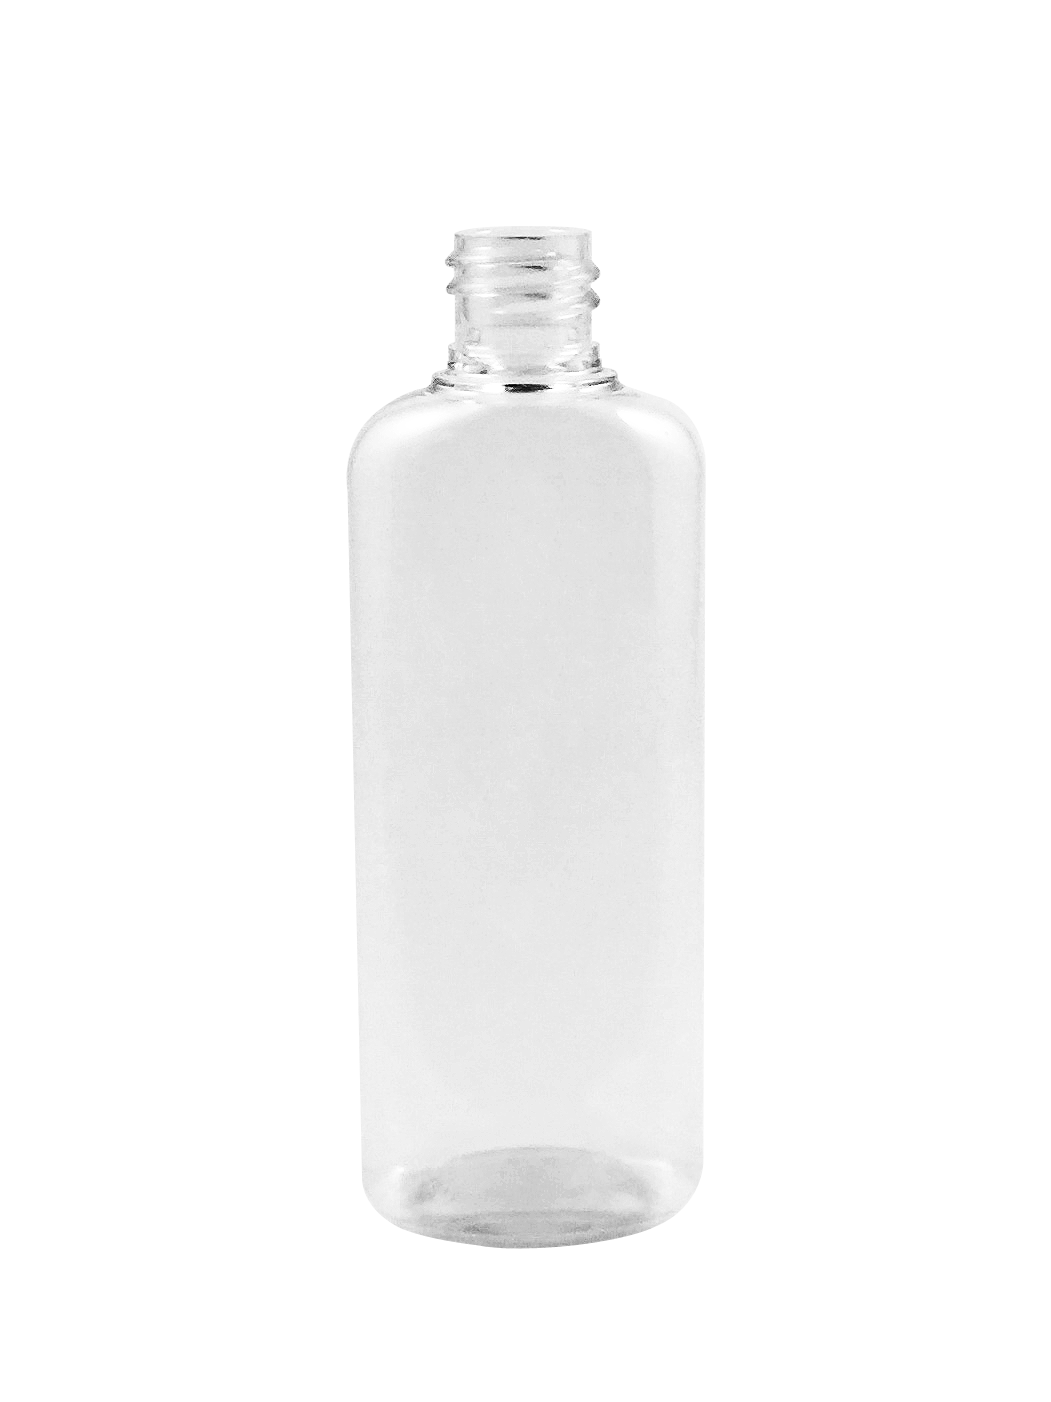 PET Bottles – ocean state packaging